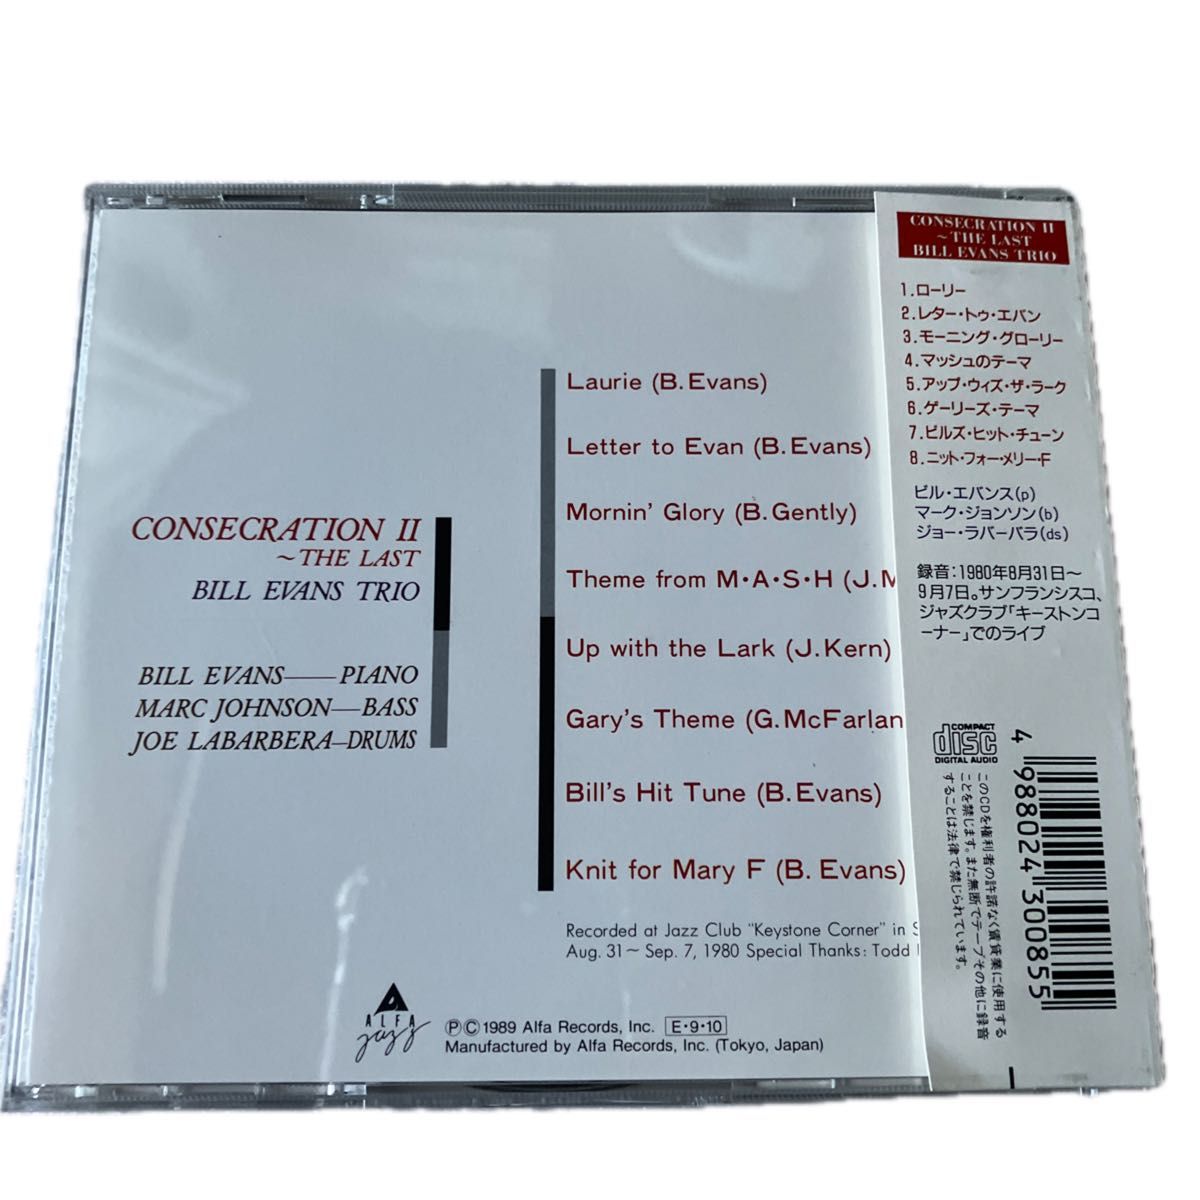 Bill Evans Trio/CONSECRATION II -the last CD